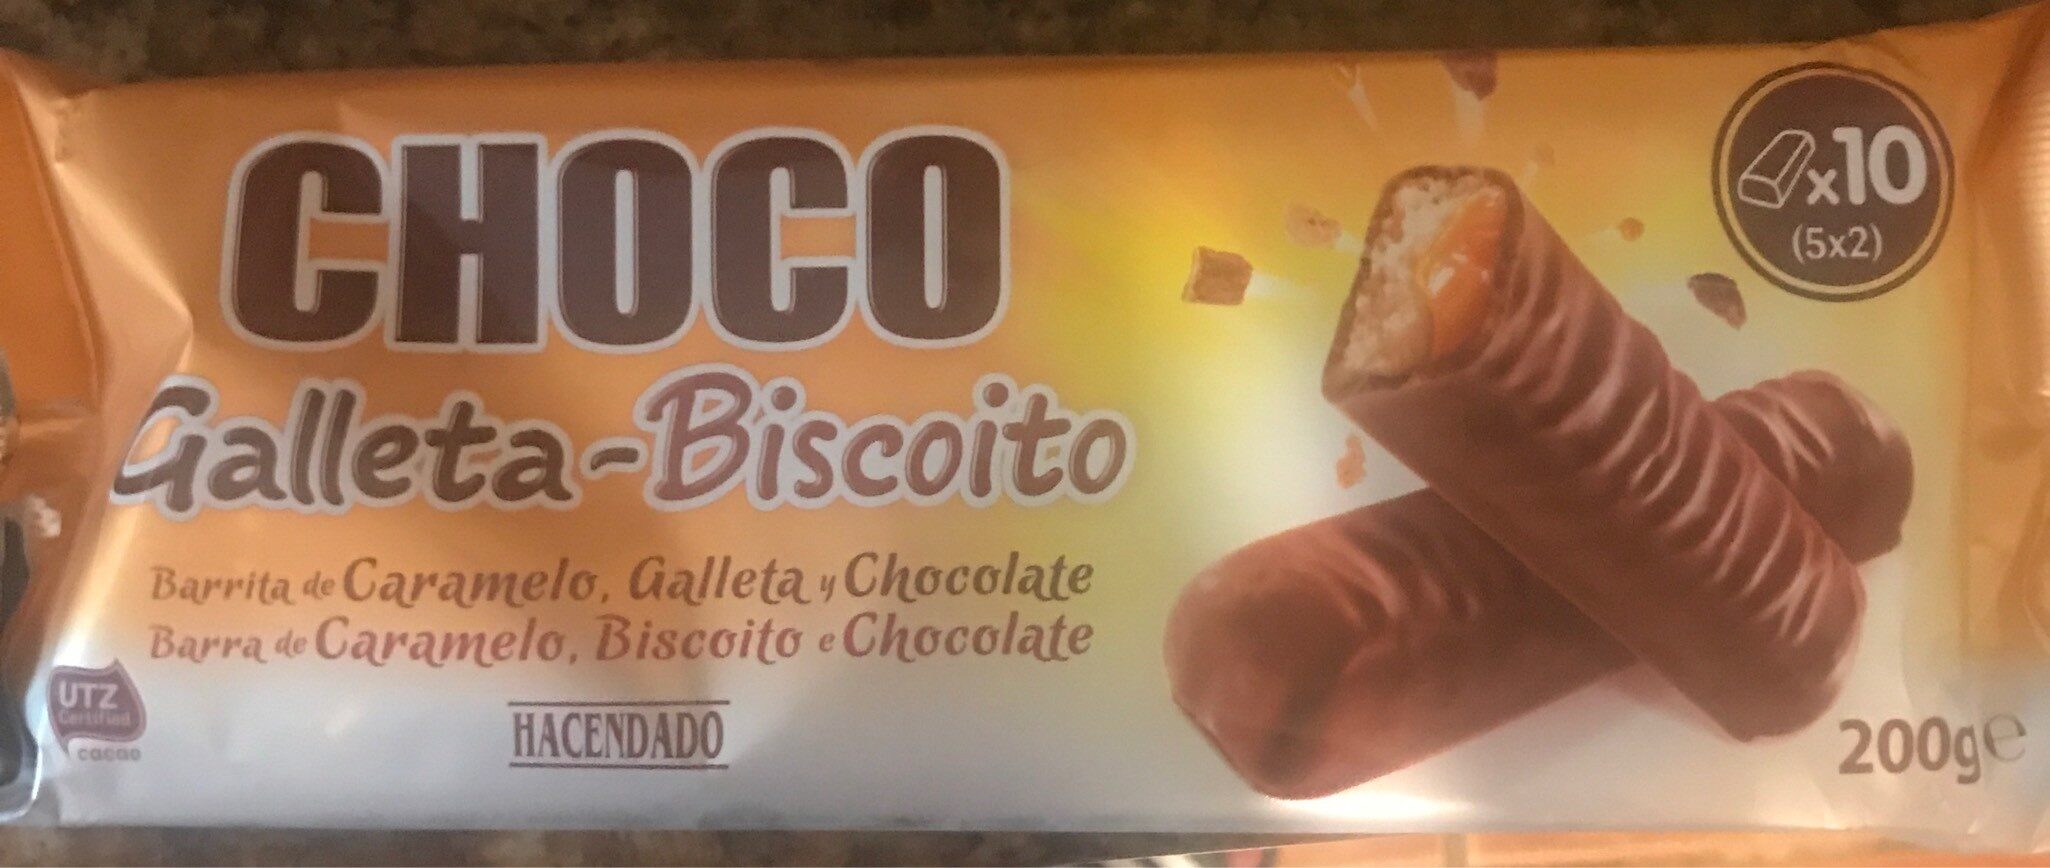 Choco galleta - Product - es